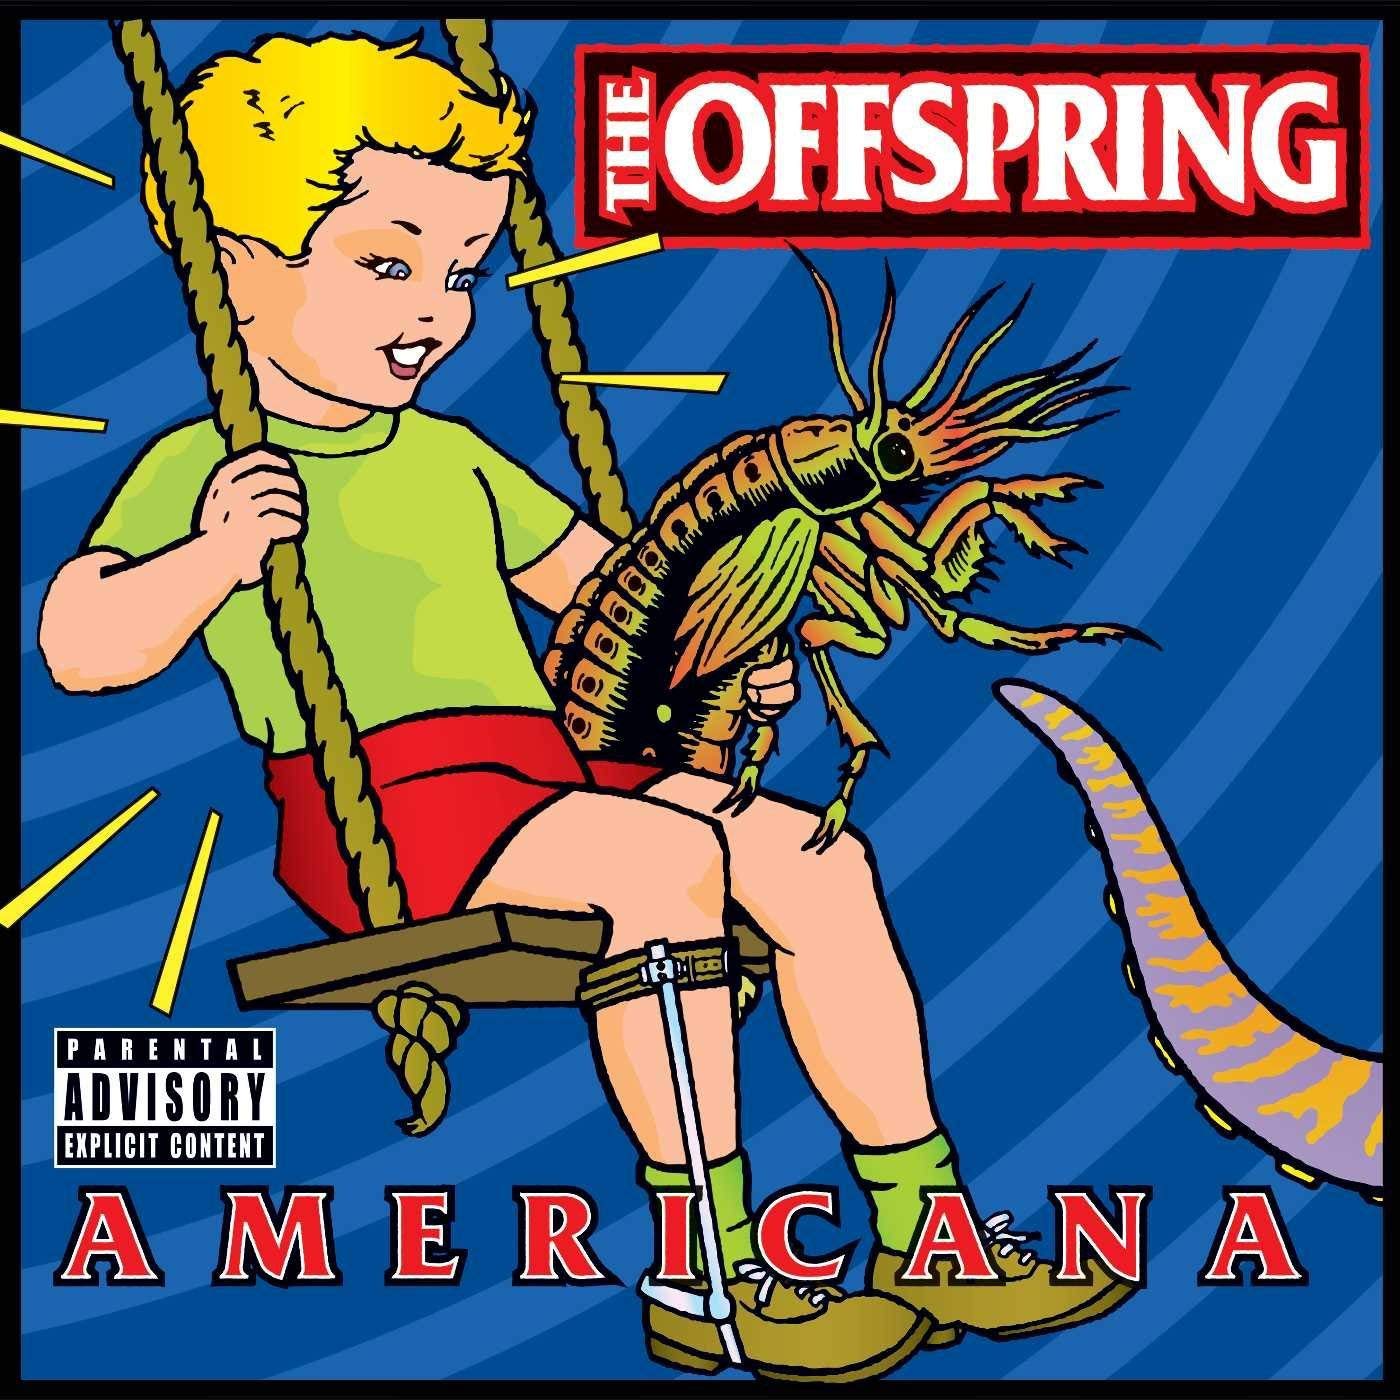 En 1998 fue publicado el álbum "Americana" de The Offspring